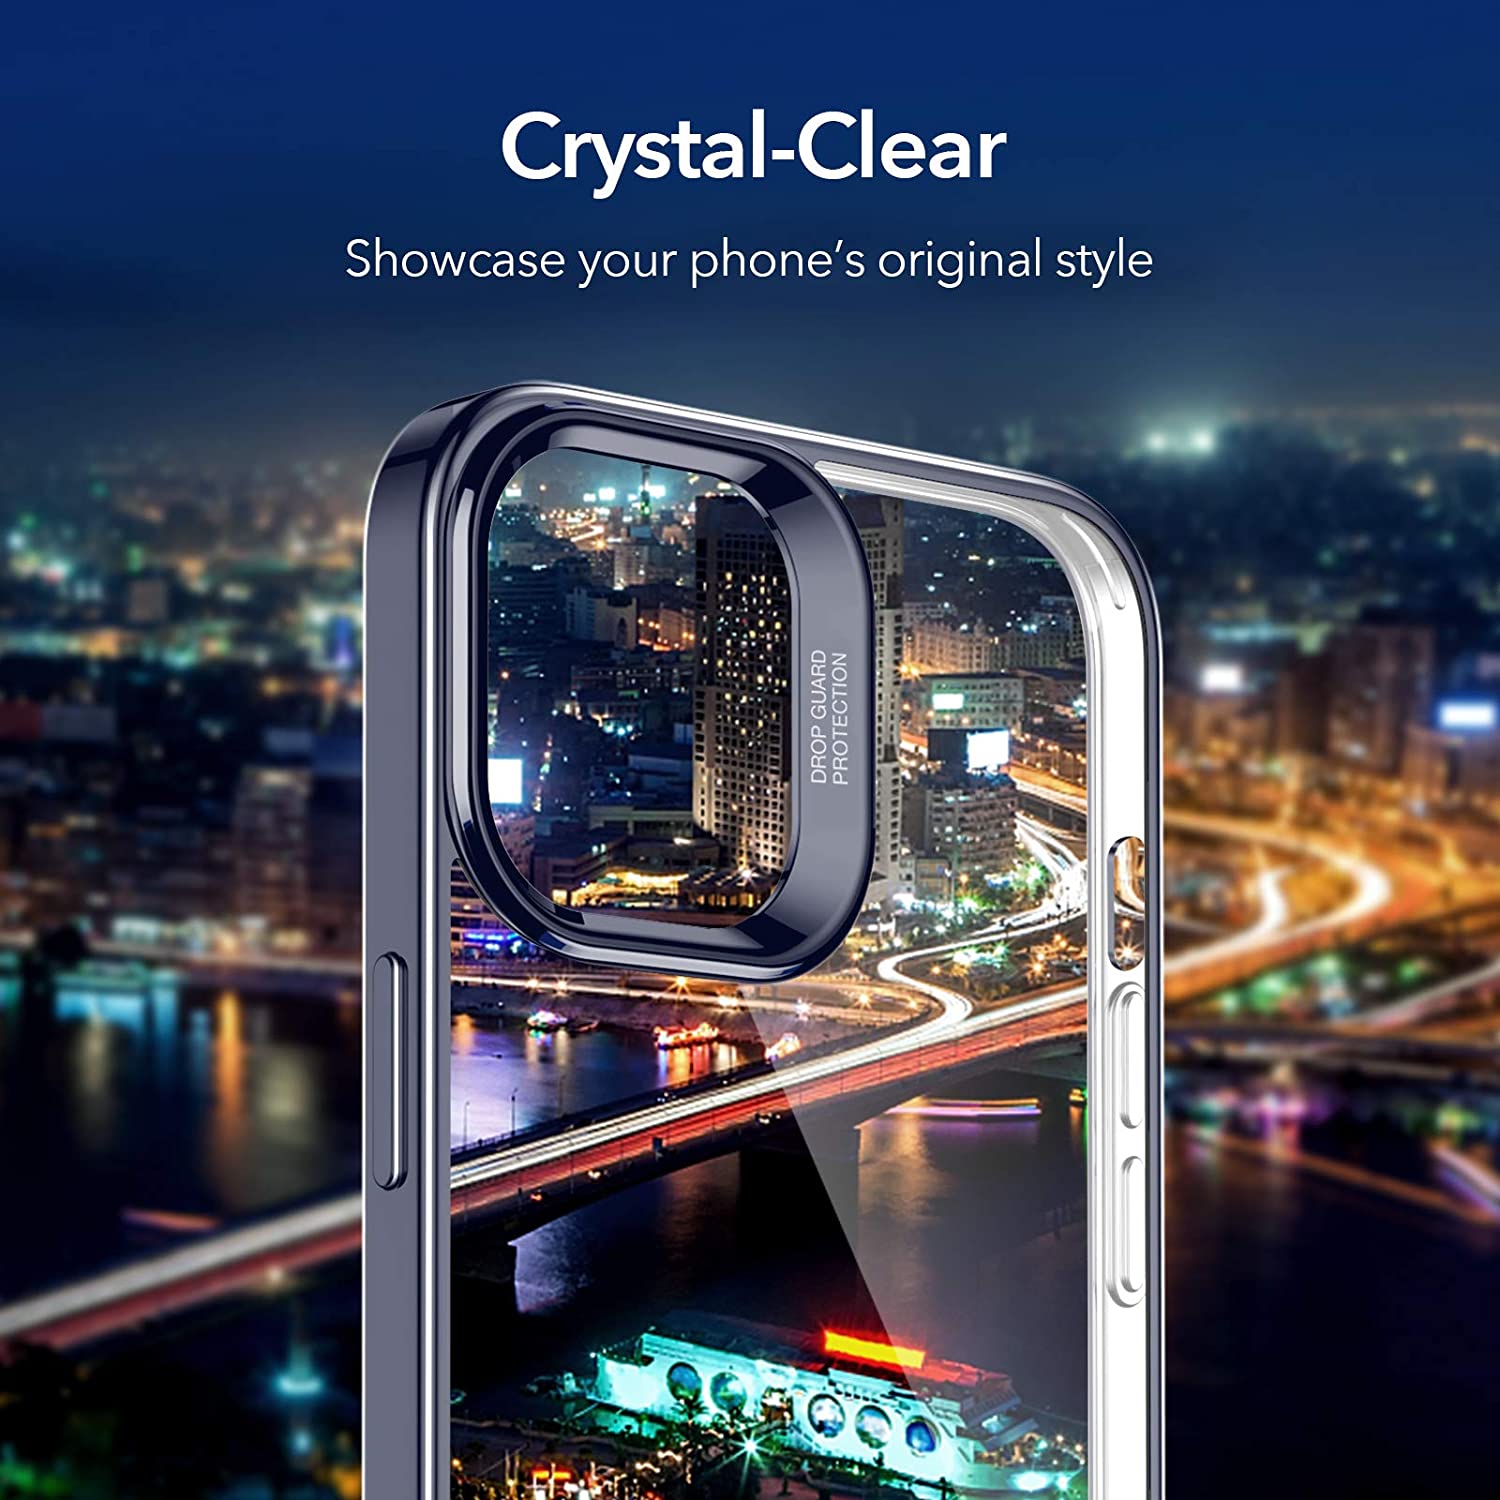 Ốp Lưng Cho iPhone 12 Mini / 12 & 12 Pro / 12 Pro Max ESR Halo Clear Case - Hàng Nhập Khẩu